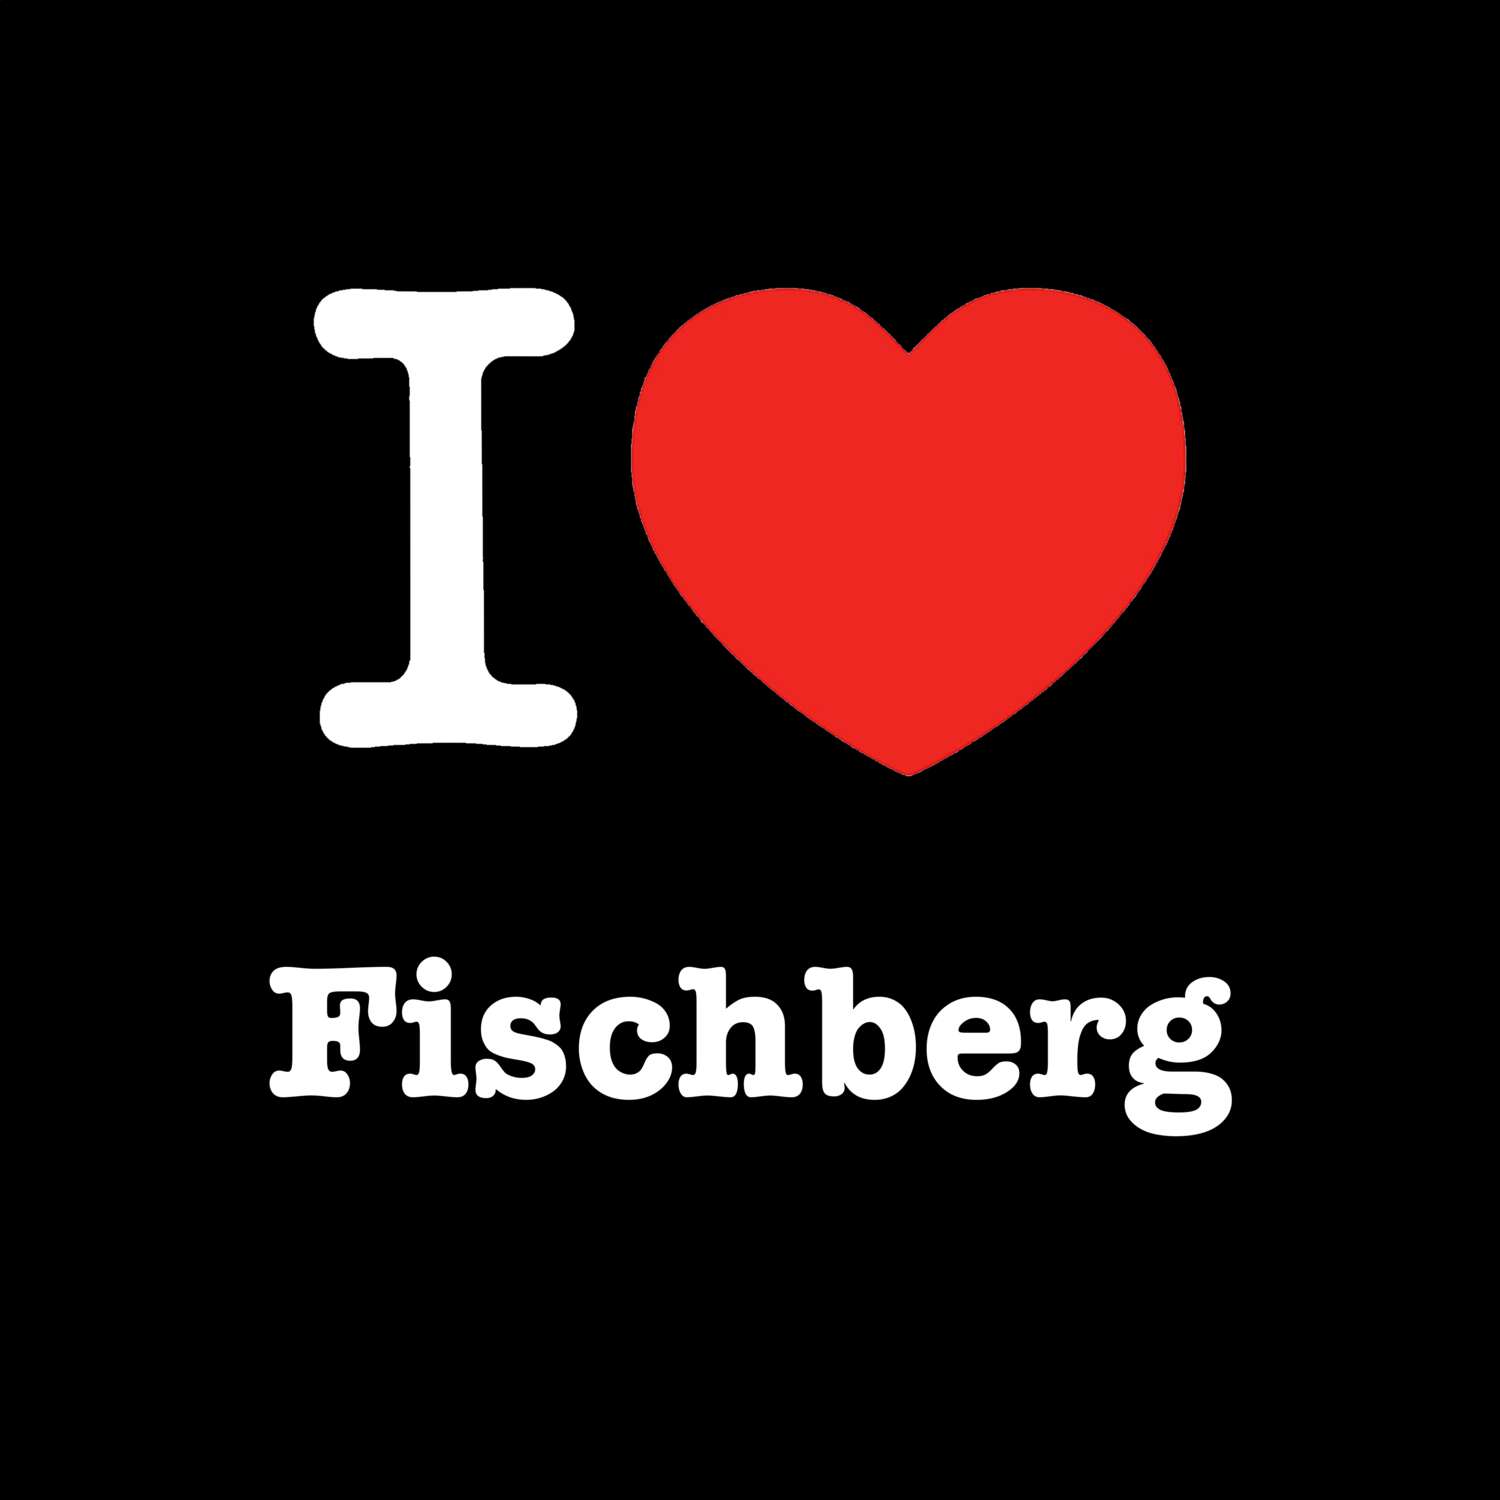 Fischberg T-Shirt »I love«